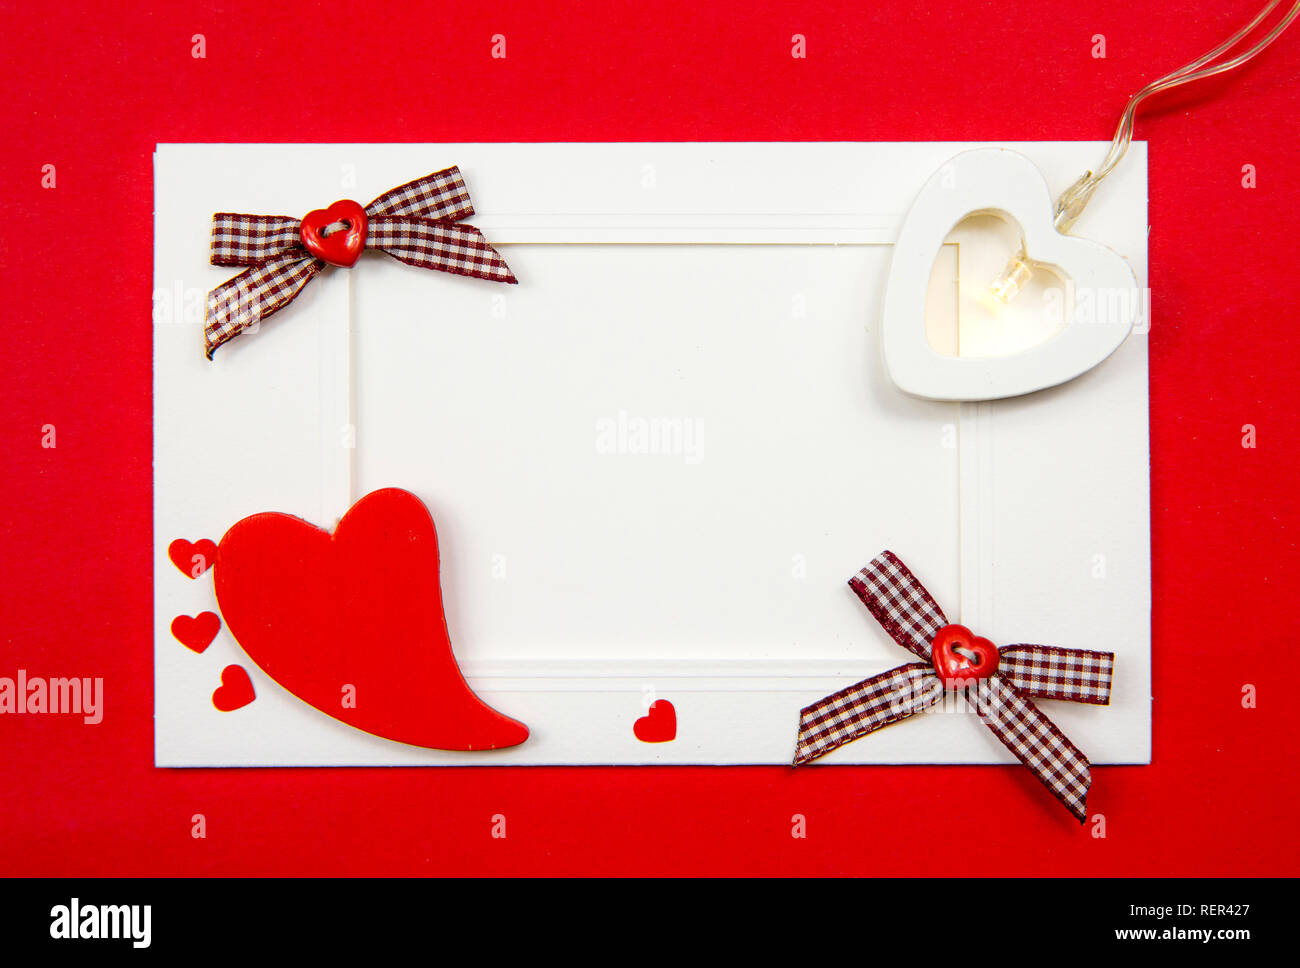 Style blanc rouge vintage vide Saint-valentin carte postale avec copie vierge de l'espace, remplir le texte vous-même. Carte de voeux Commercial arrière-plan. Banque D'Images